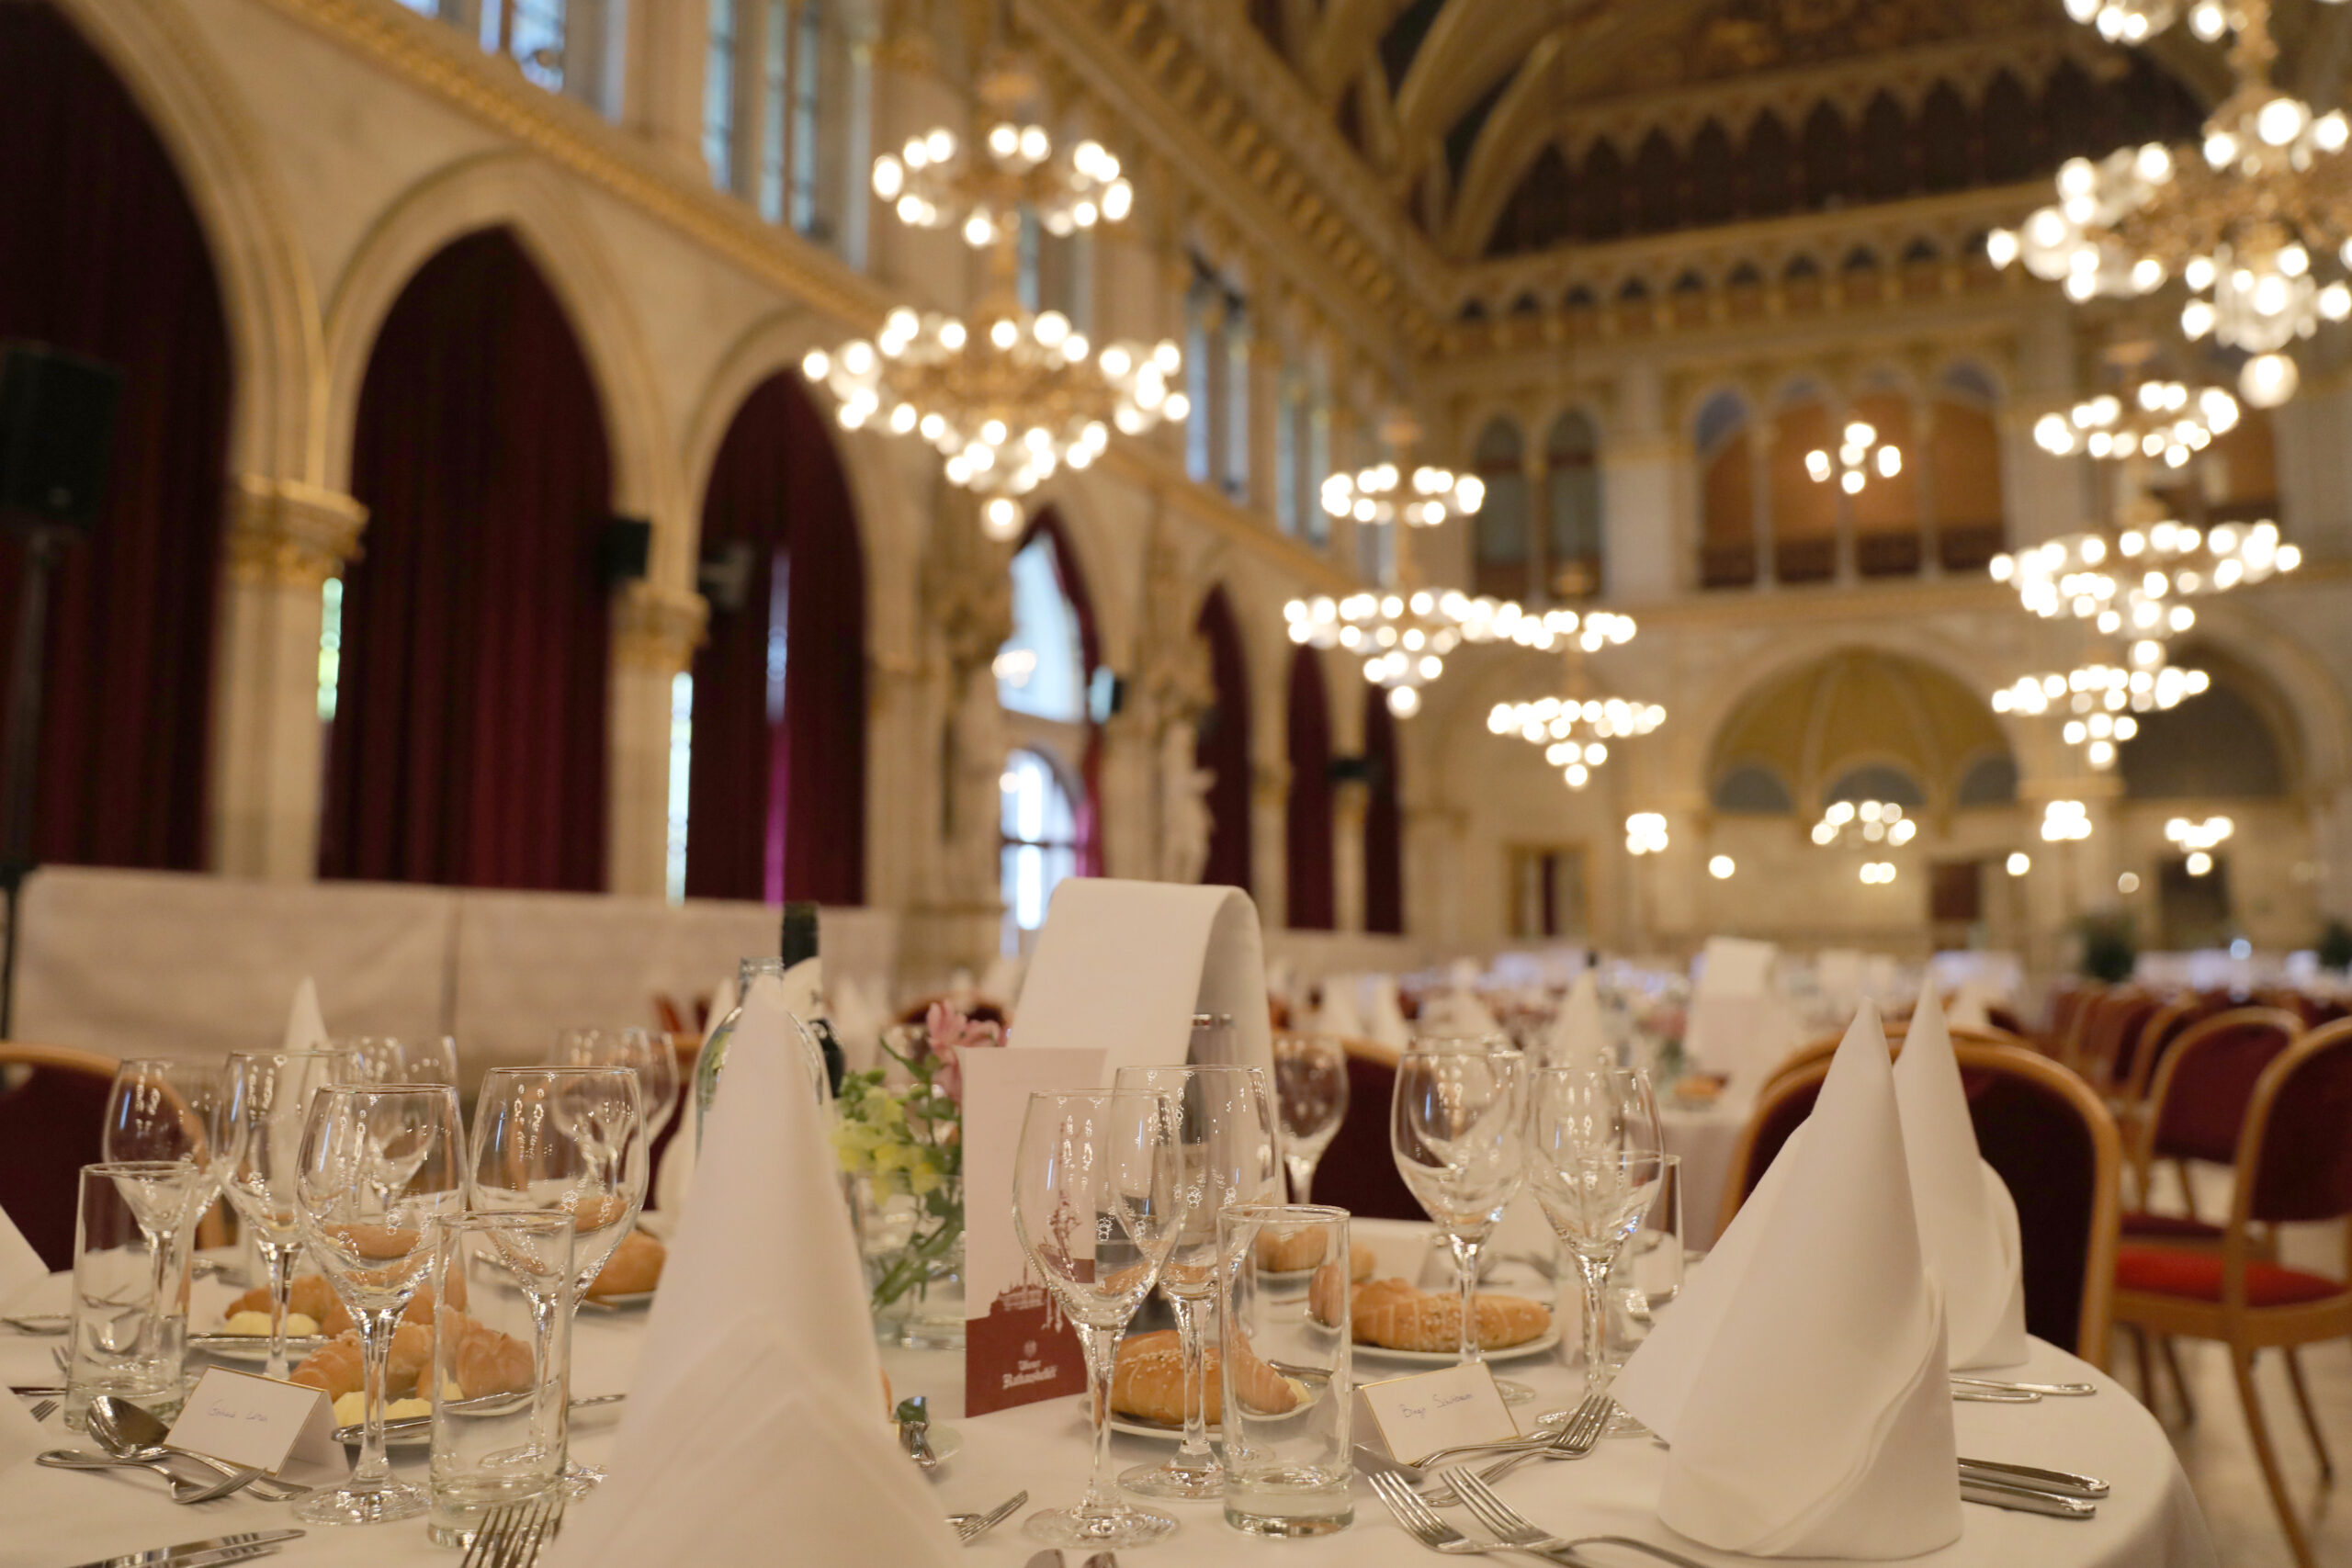 Festlich gedeckte Tische in einem eleganten Saal mit Kronleuchtern und historischer Architektur